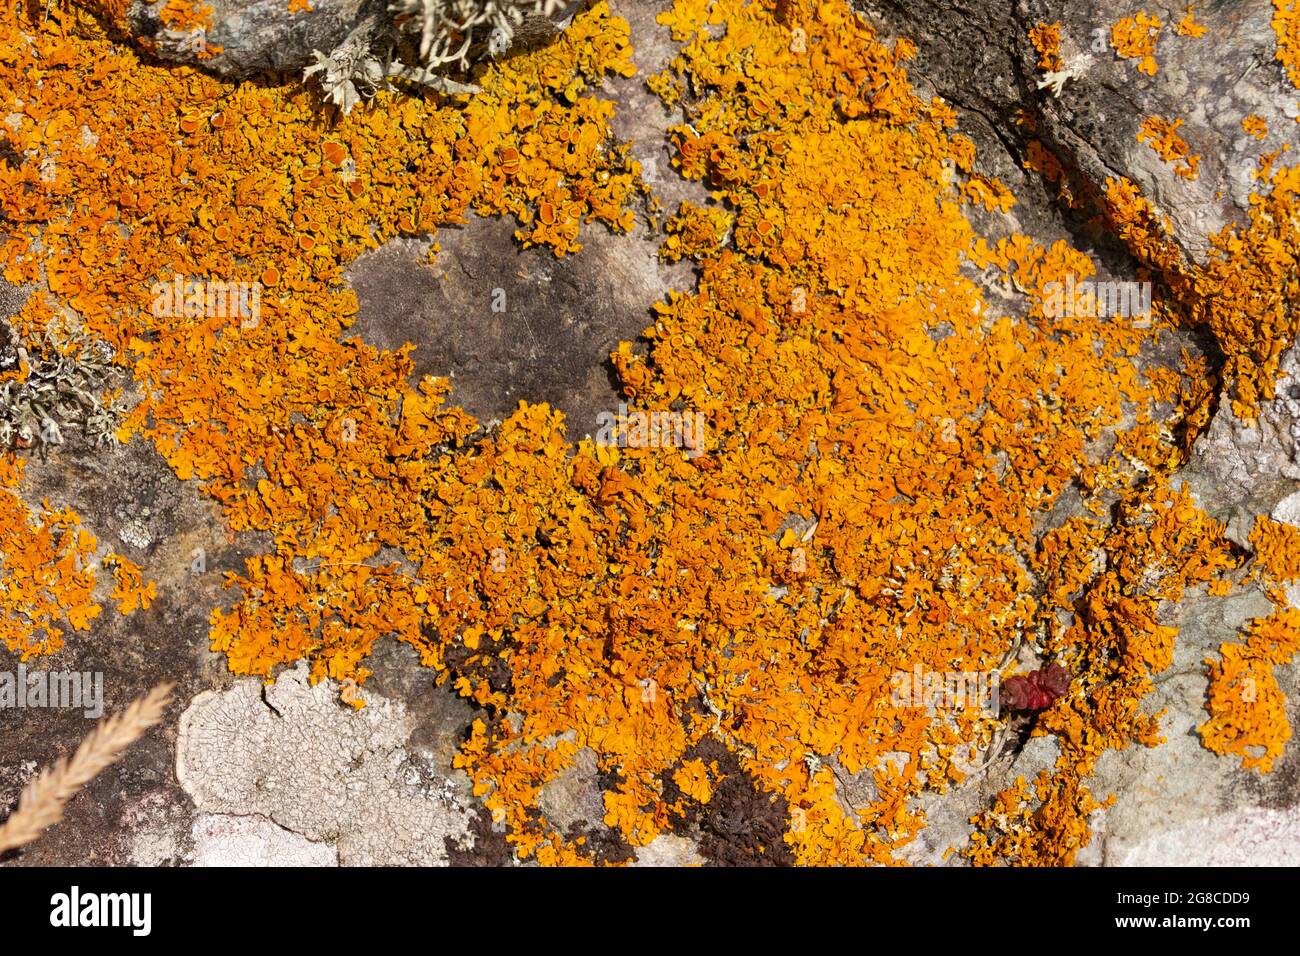 Le lichen doré est particulièrement courant dans les zones côtières, poussant sur les rochers et les arbres juste au-dessus de la ligne de marée. Banque D'Images